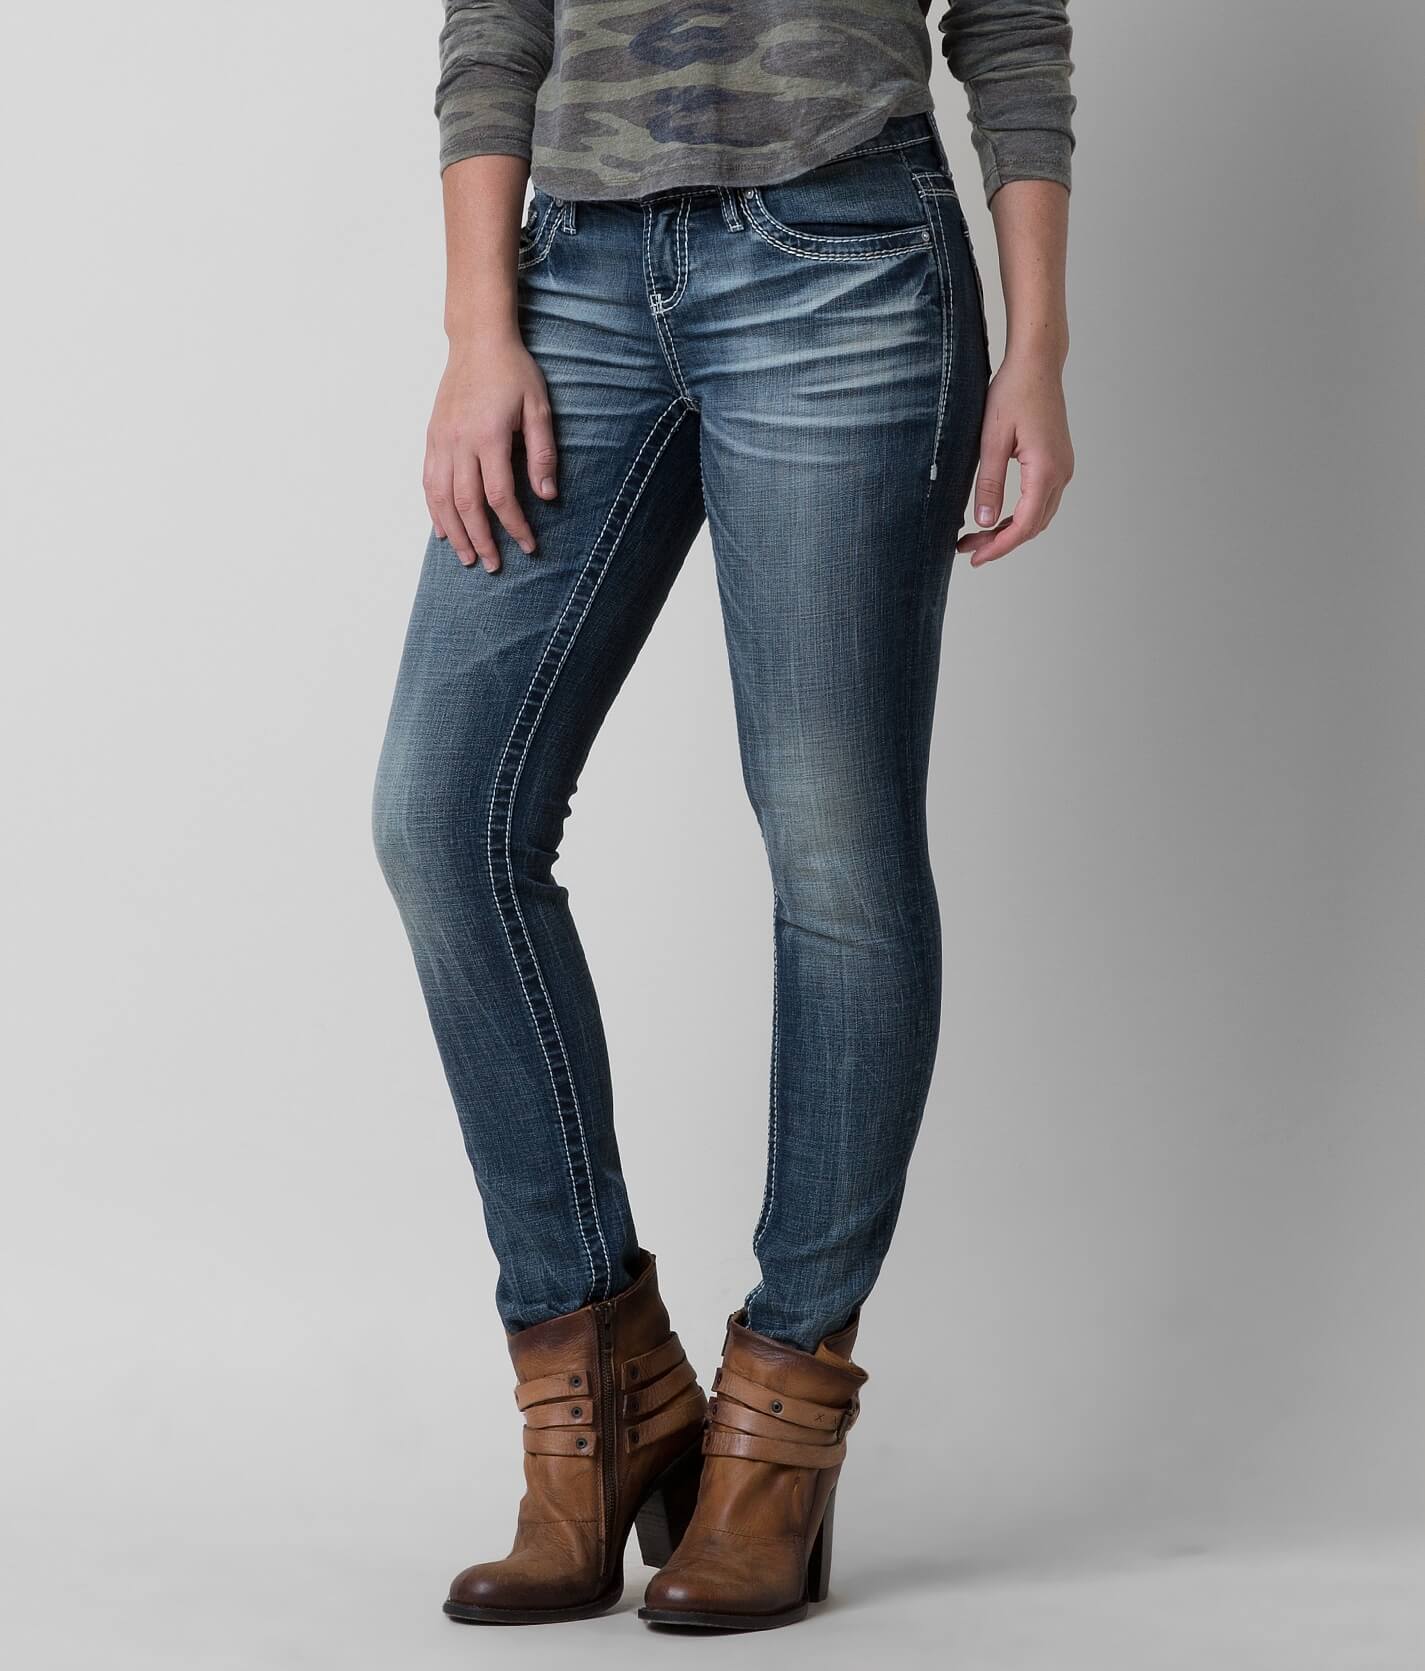 daytrip lynx skinny jeans